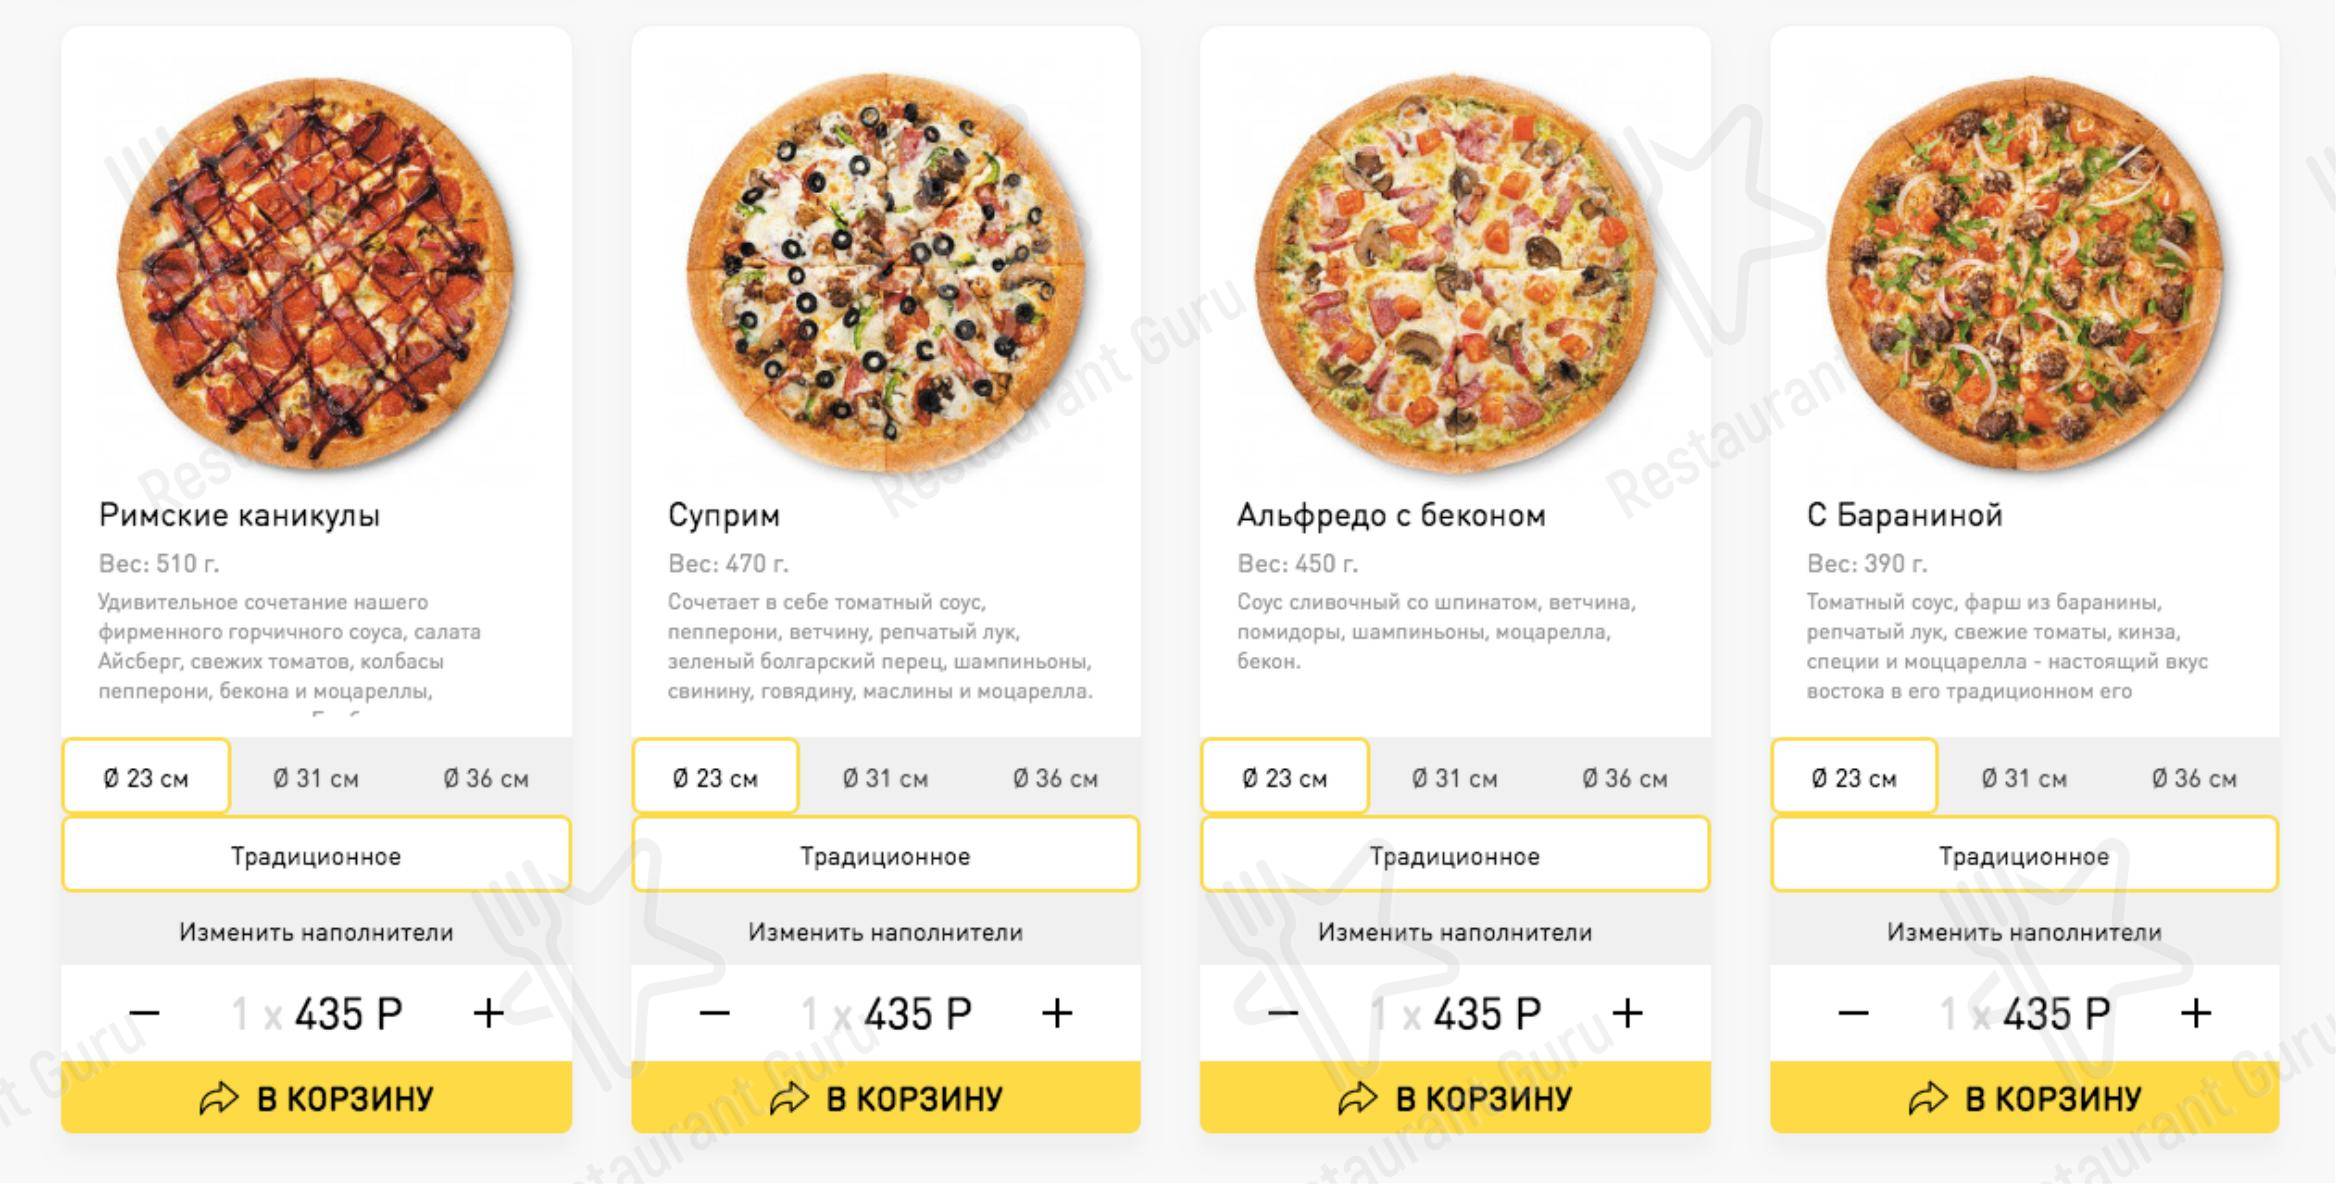 лучшая доставка пицца в москве рейтинг фото 93